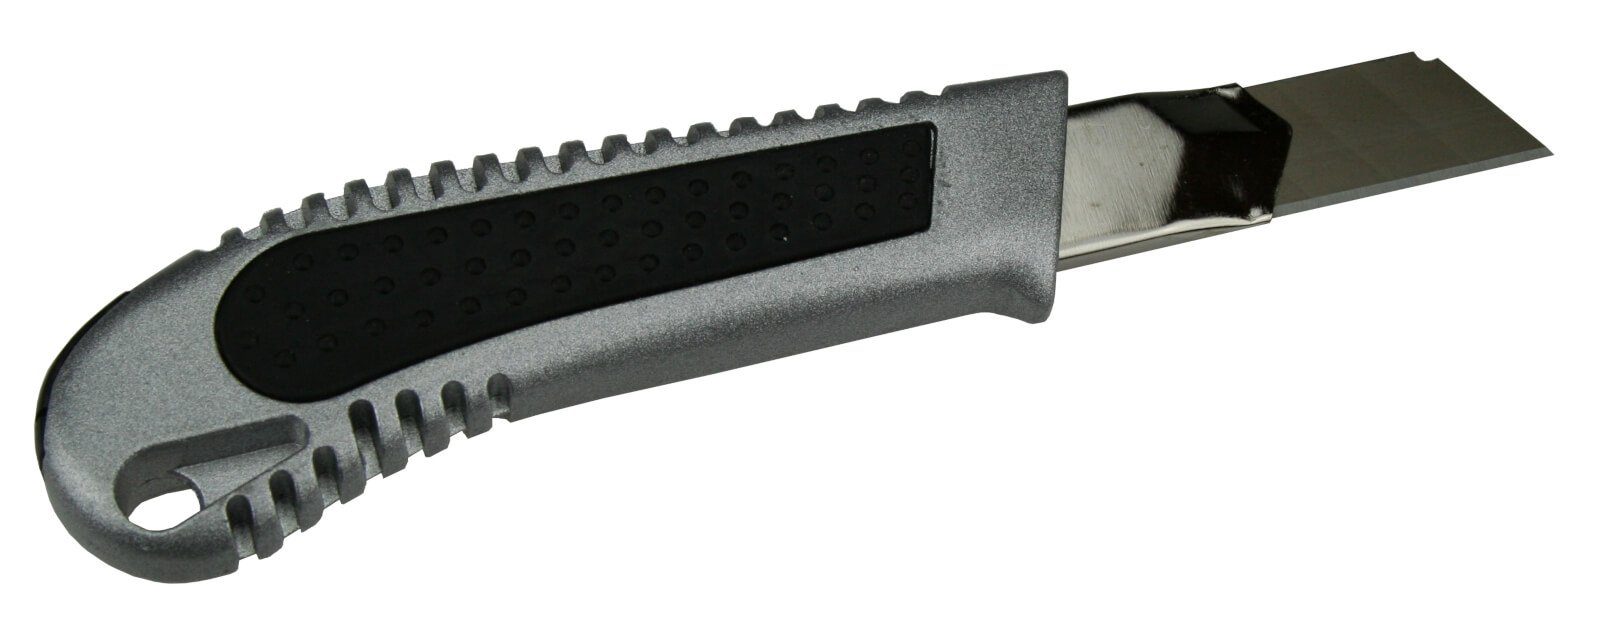 peveha24 Cuttermesser 2 Cuttermesser Cutter + im Köcher Abbrechklingen 10 18mm